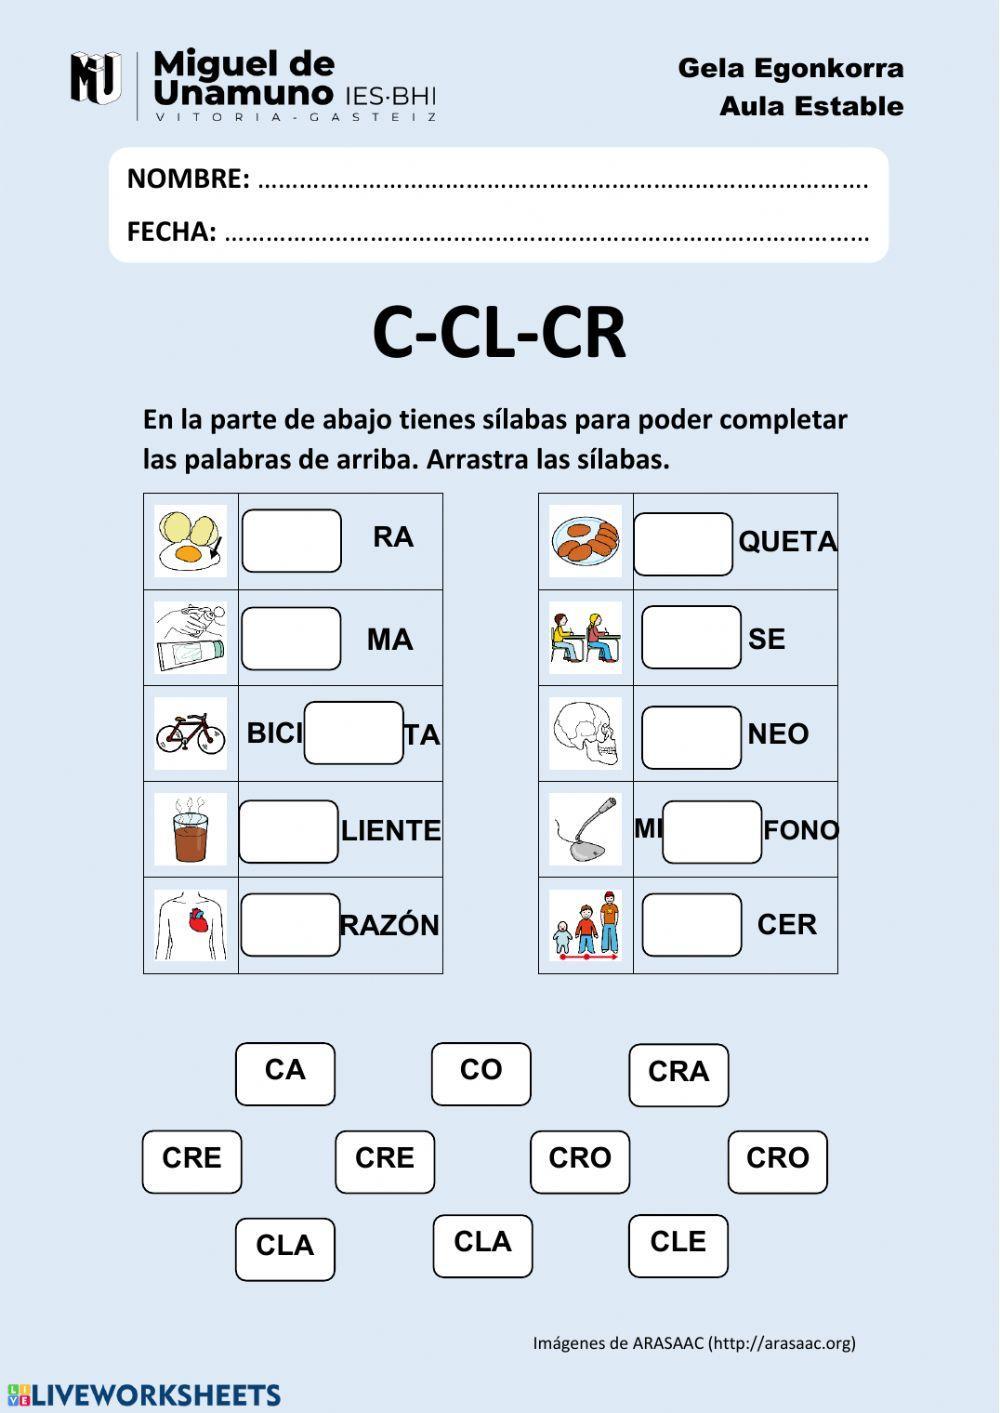 C-CL-CR: arrastra las sílabas y escribe las palabras